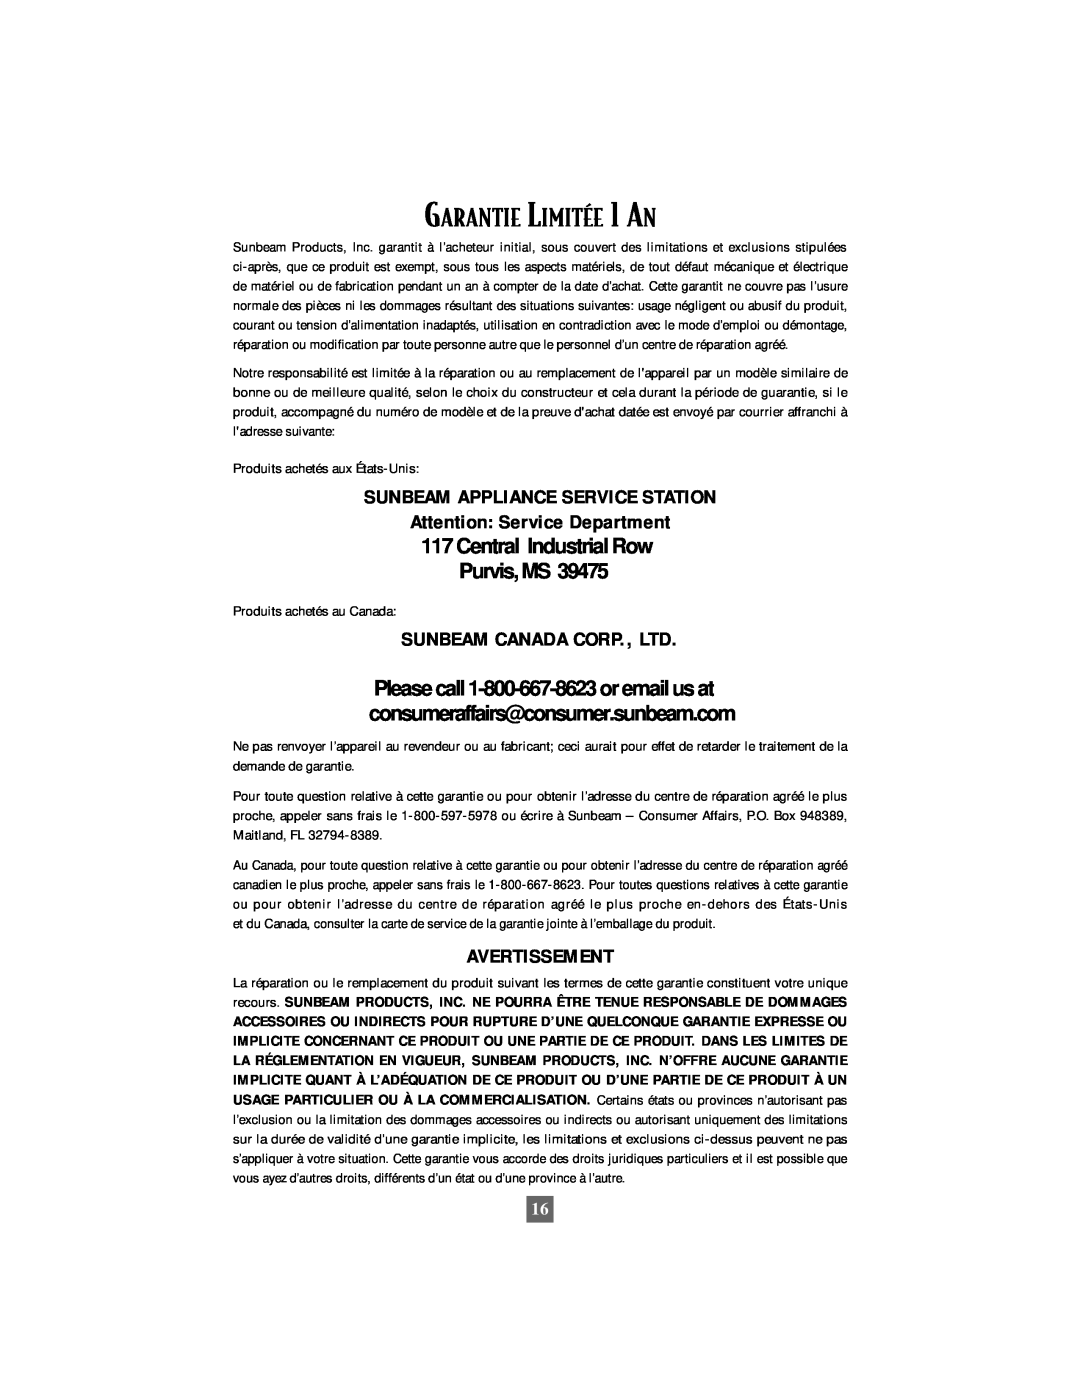 Oster 6210 manual GARANTIE LIMITƒE 1 AN, Avertissement, Sunbeam Appliance Service Station, Attention Service Department 